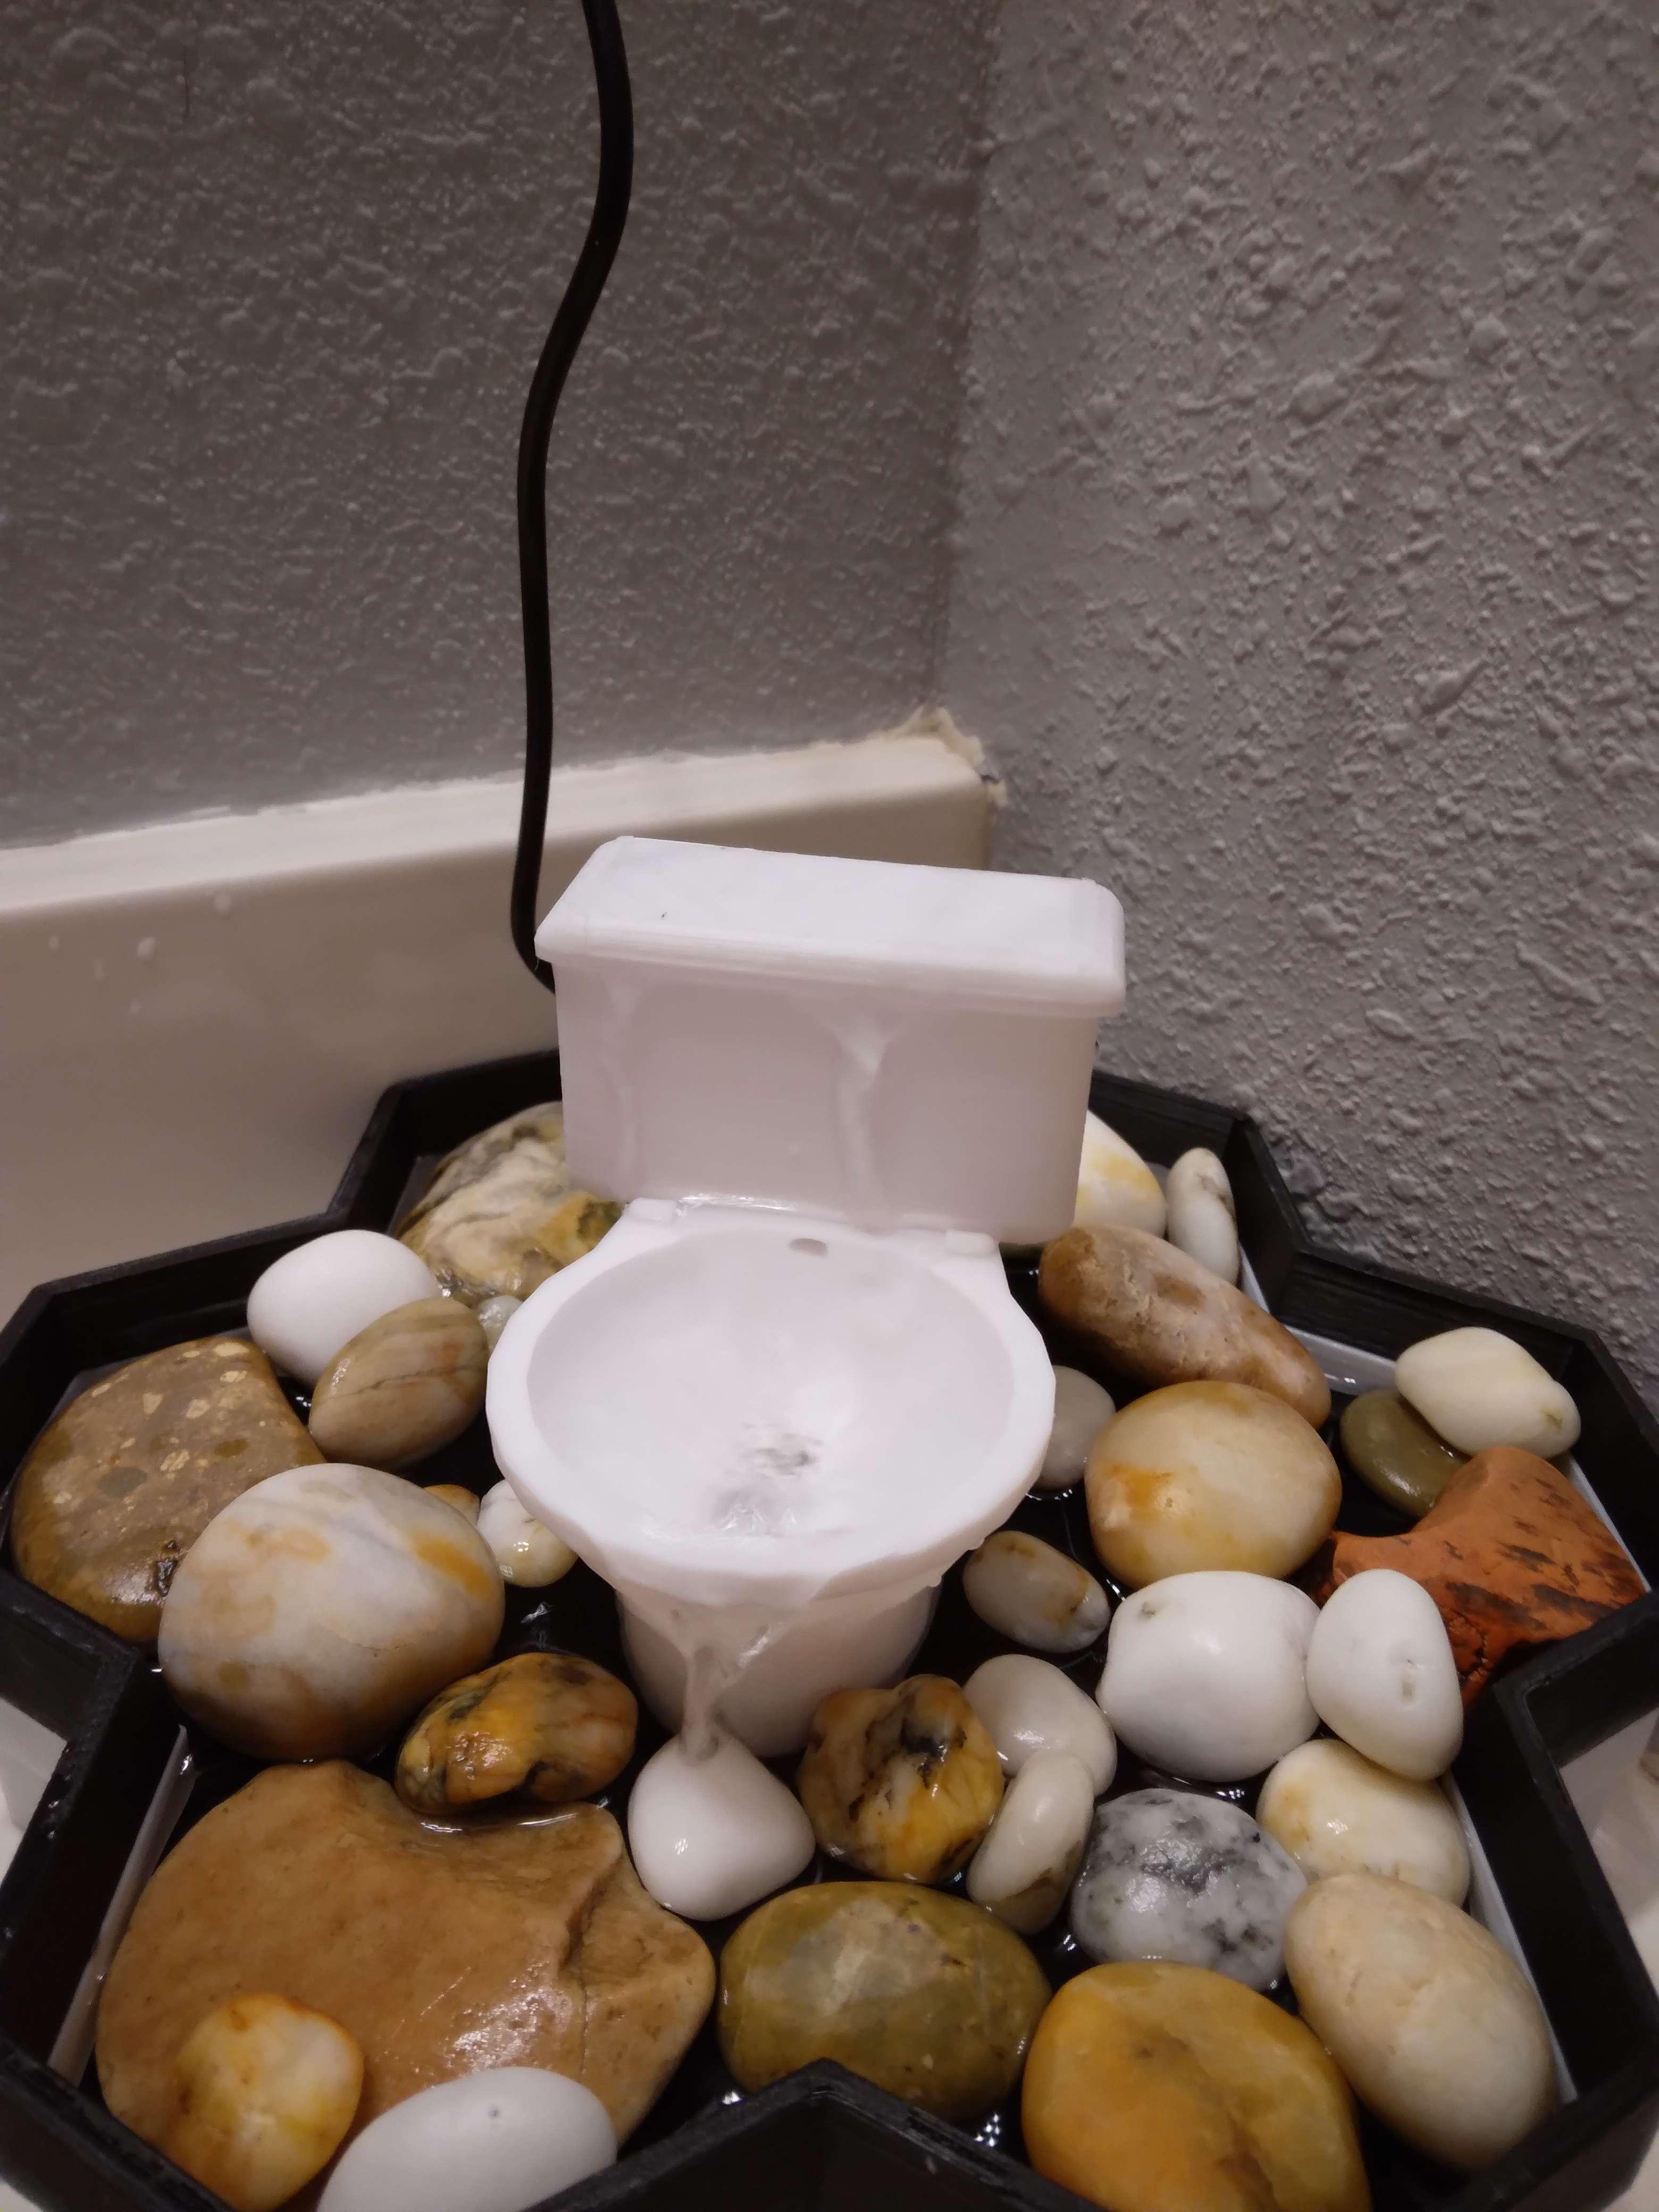 Toilet For Modular Desktop Fountain 3d model